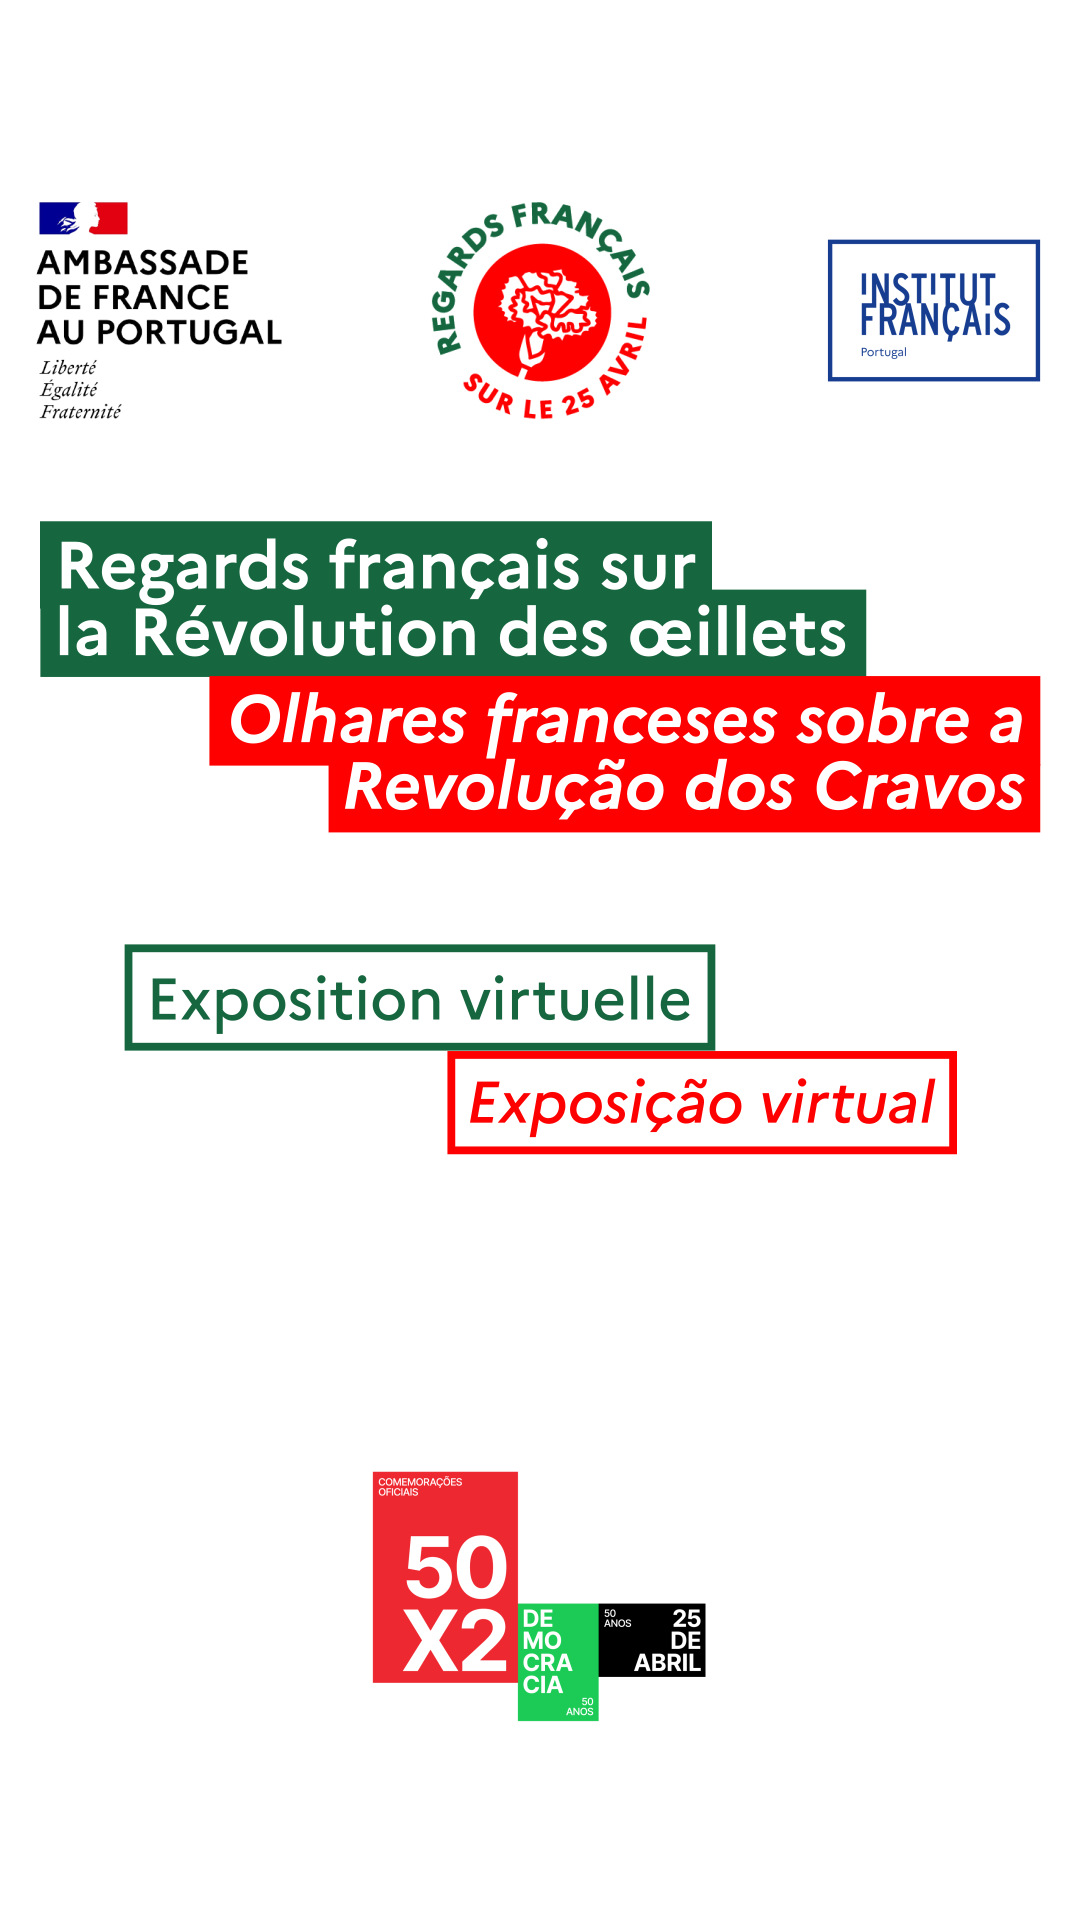 Capa Oficial do Evento Olhares franceses sobre a Revolução dos Cravos - exposição em linha